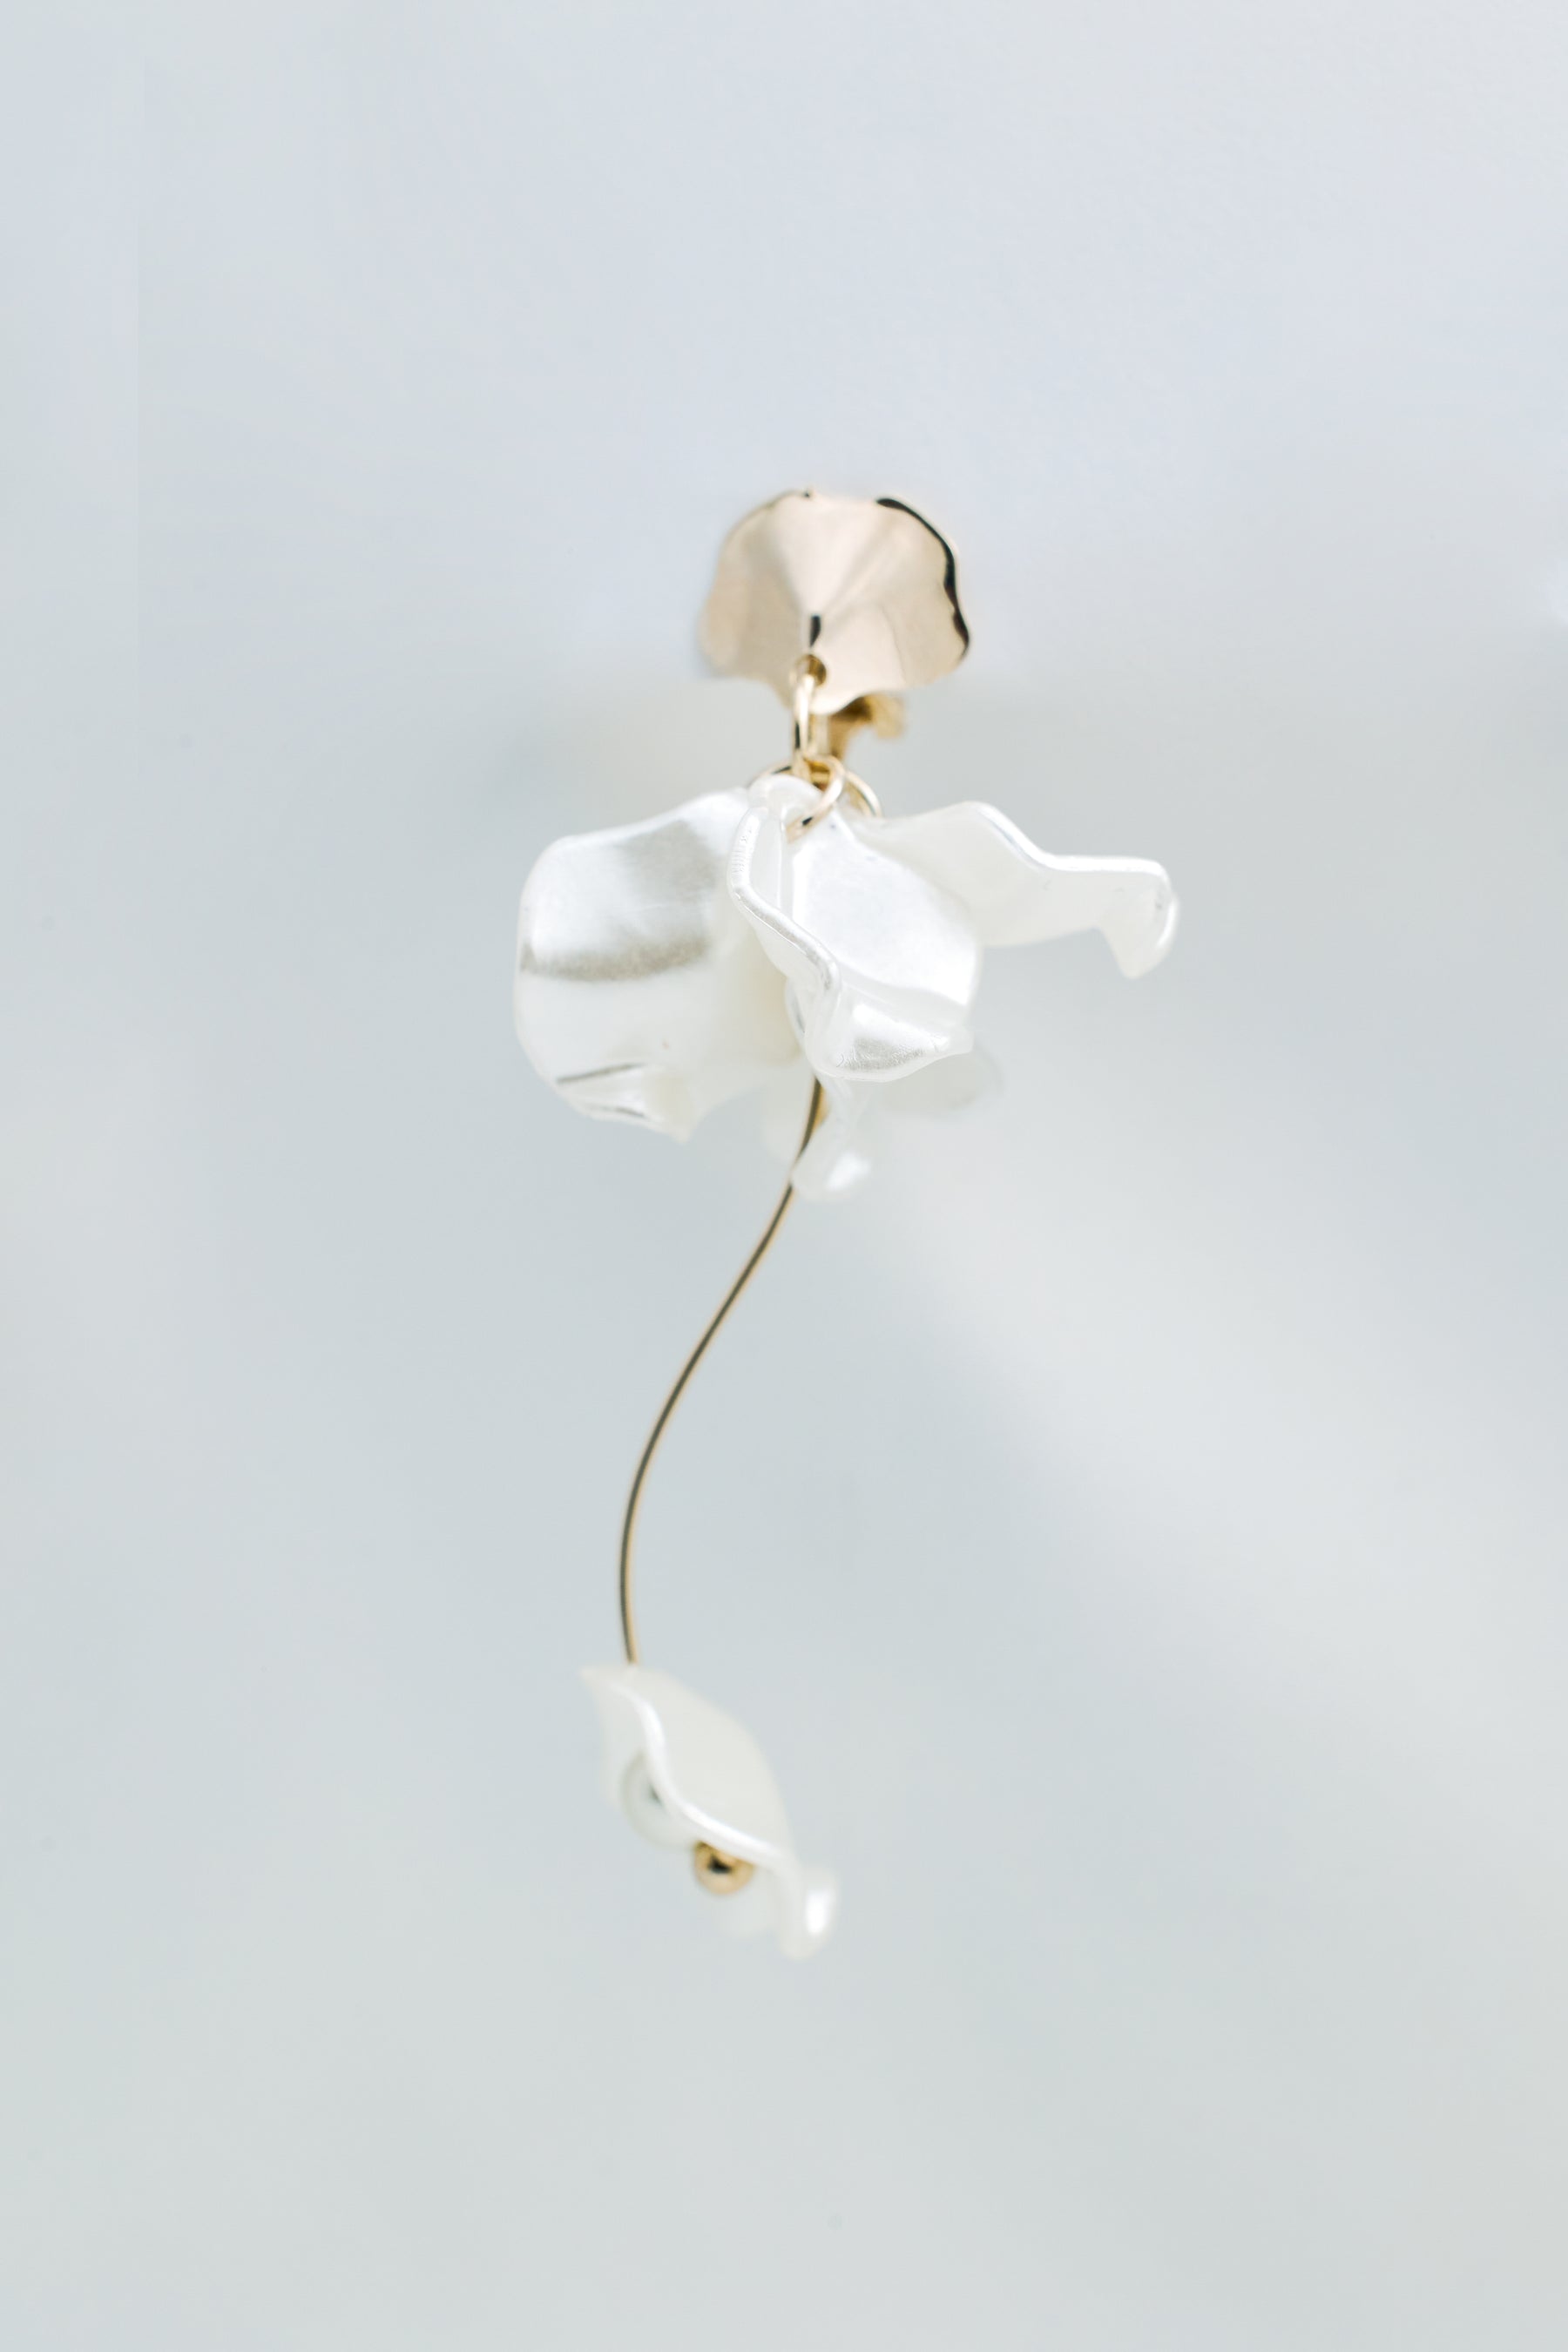 [Shipping in early June] Clear Flower Gold Tone Earrings